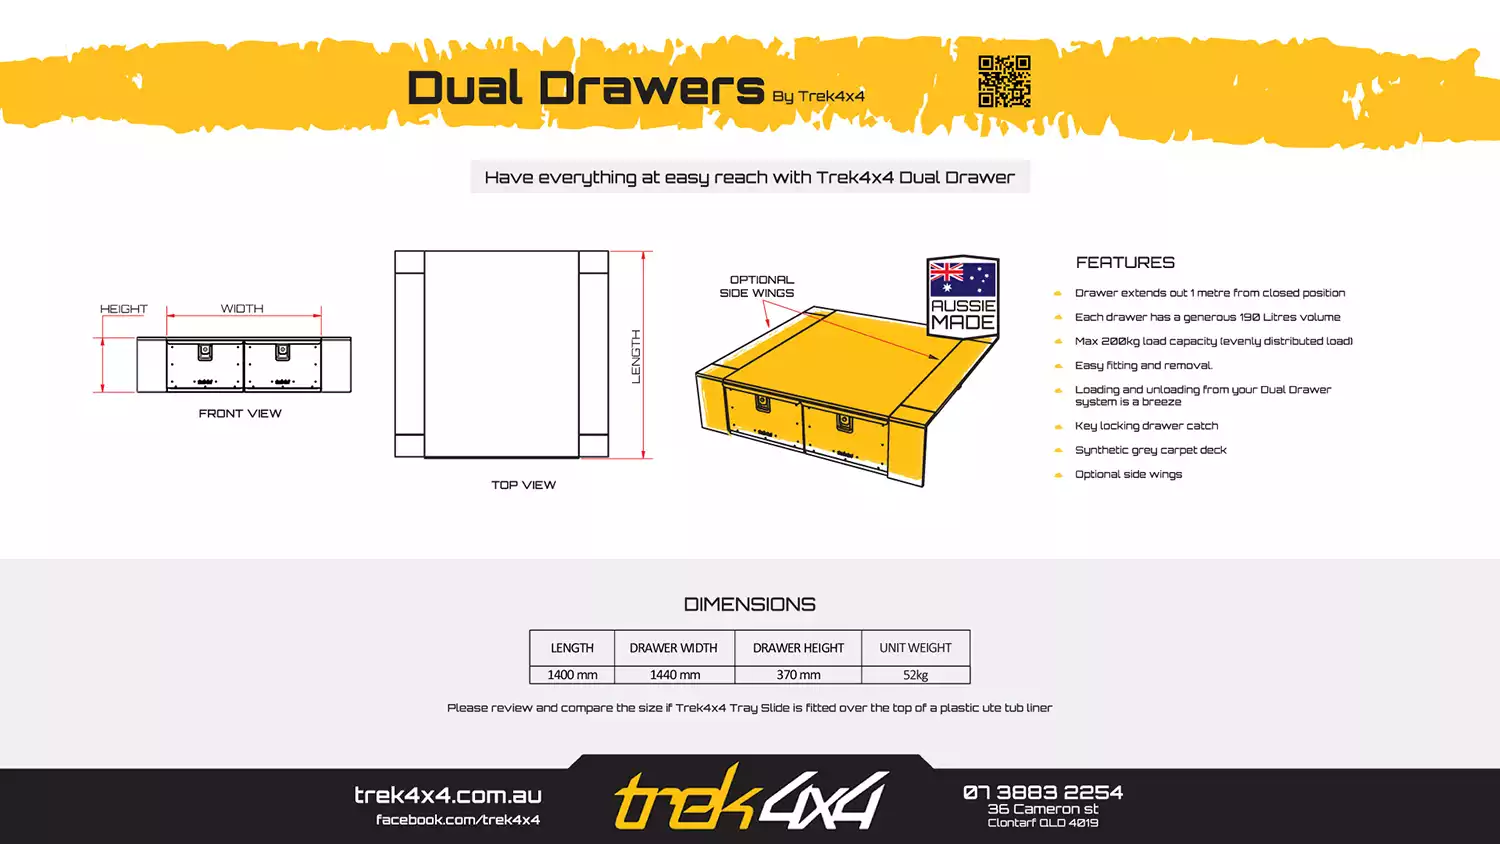 Dual-Drawers by Trek 4x4 - Brochure